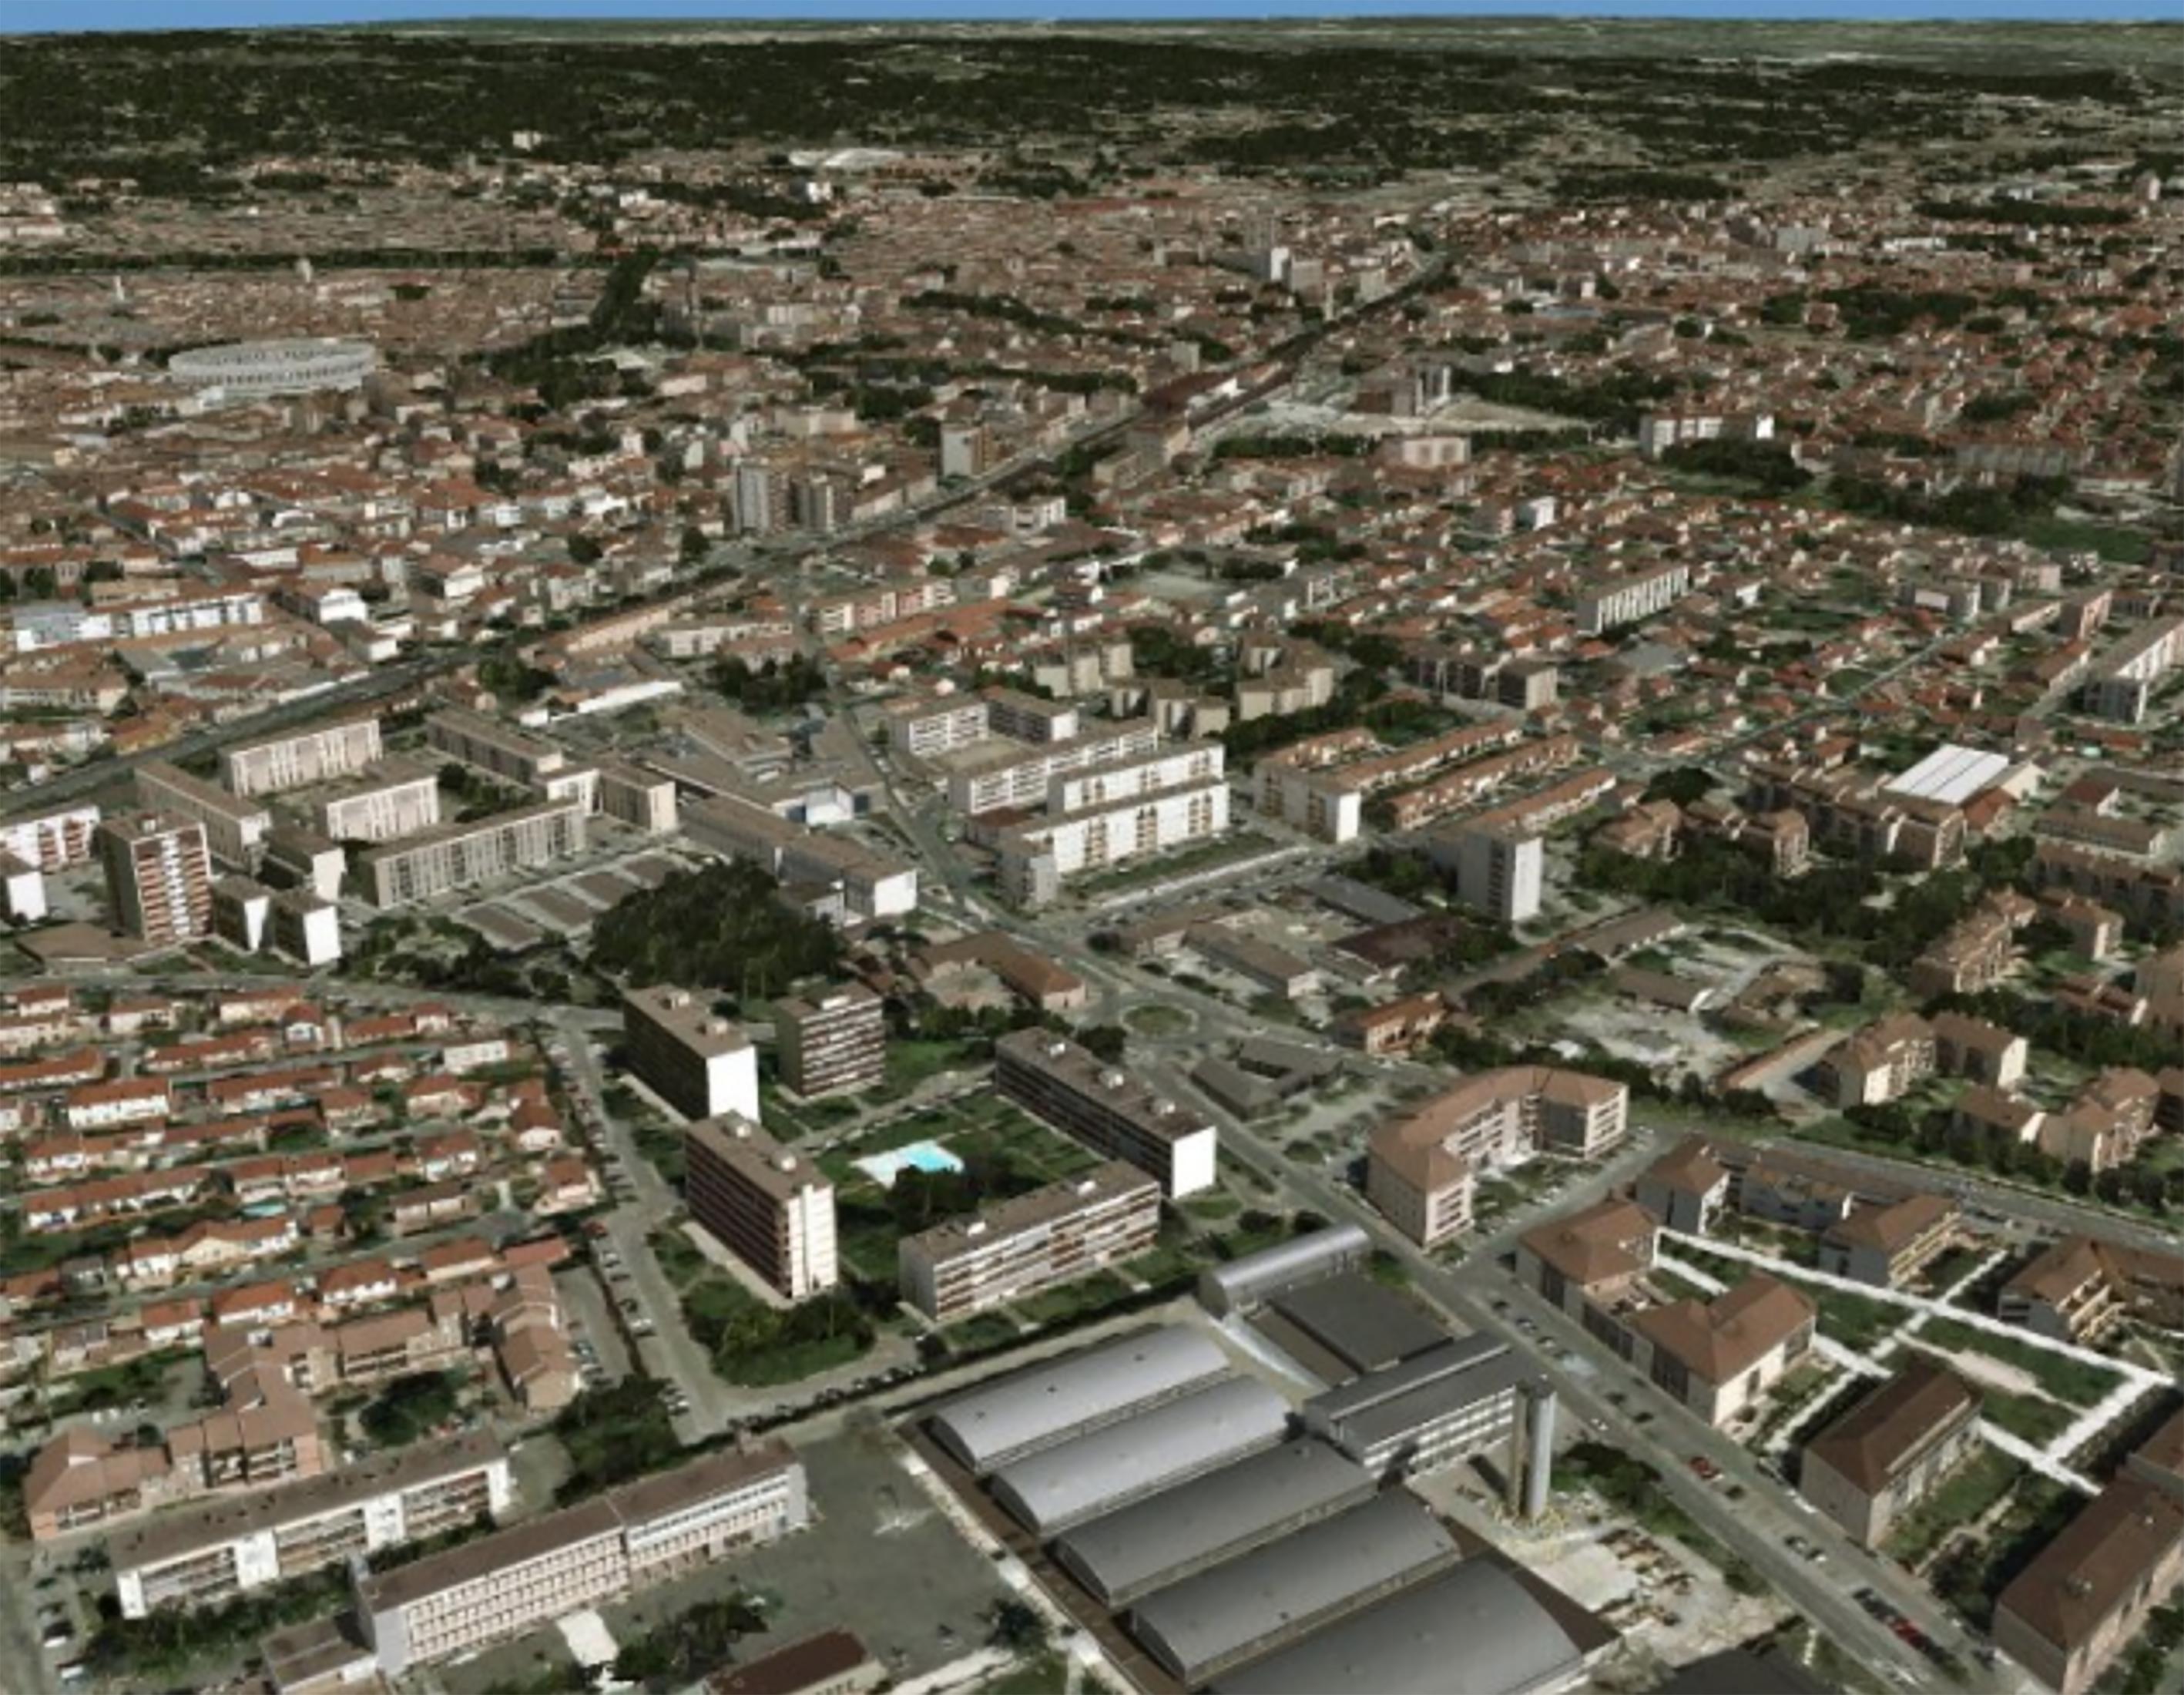 SIRADEL construit les " jumeaux numériques " des villes en 3D pour mieux les aménager (source : site Siradel)